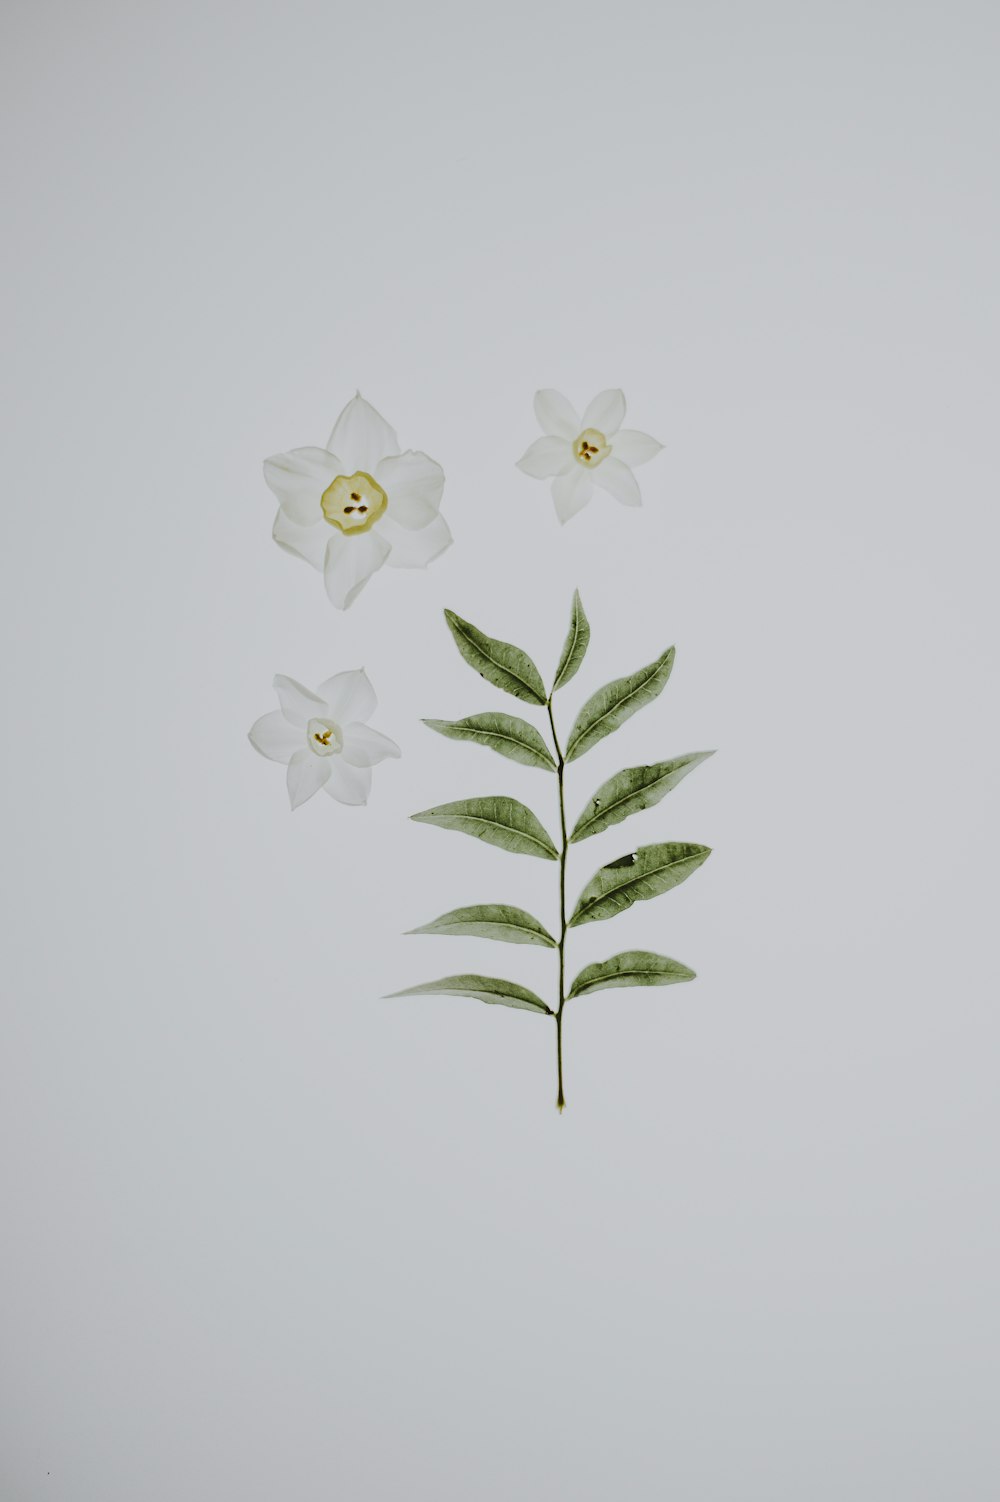 Fotografía plana de flores y hojas blancas